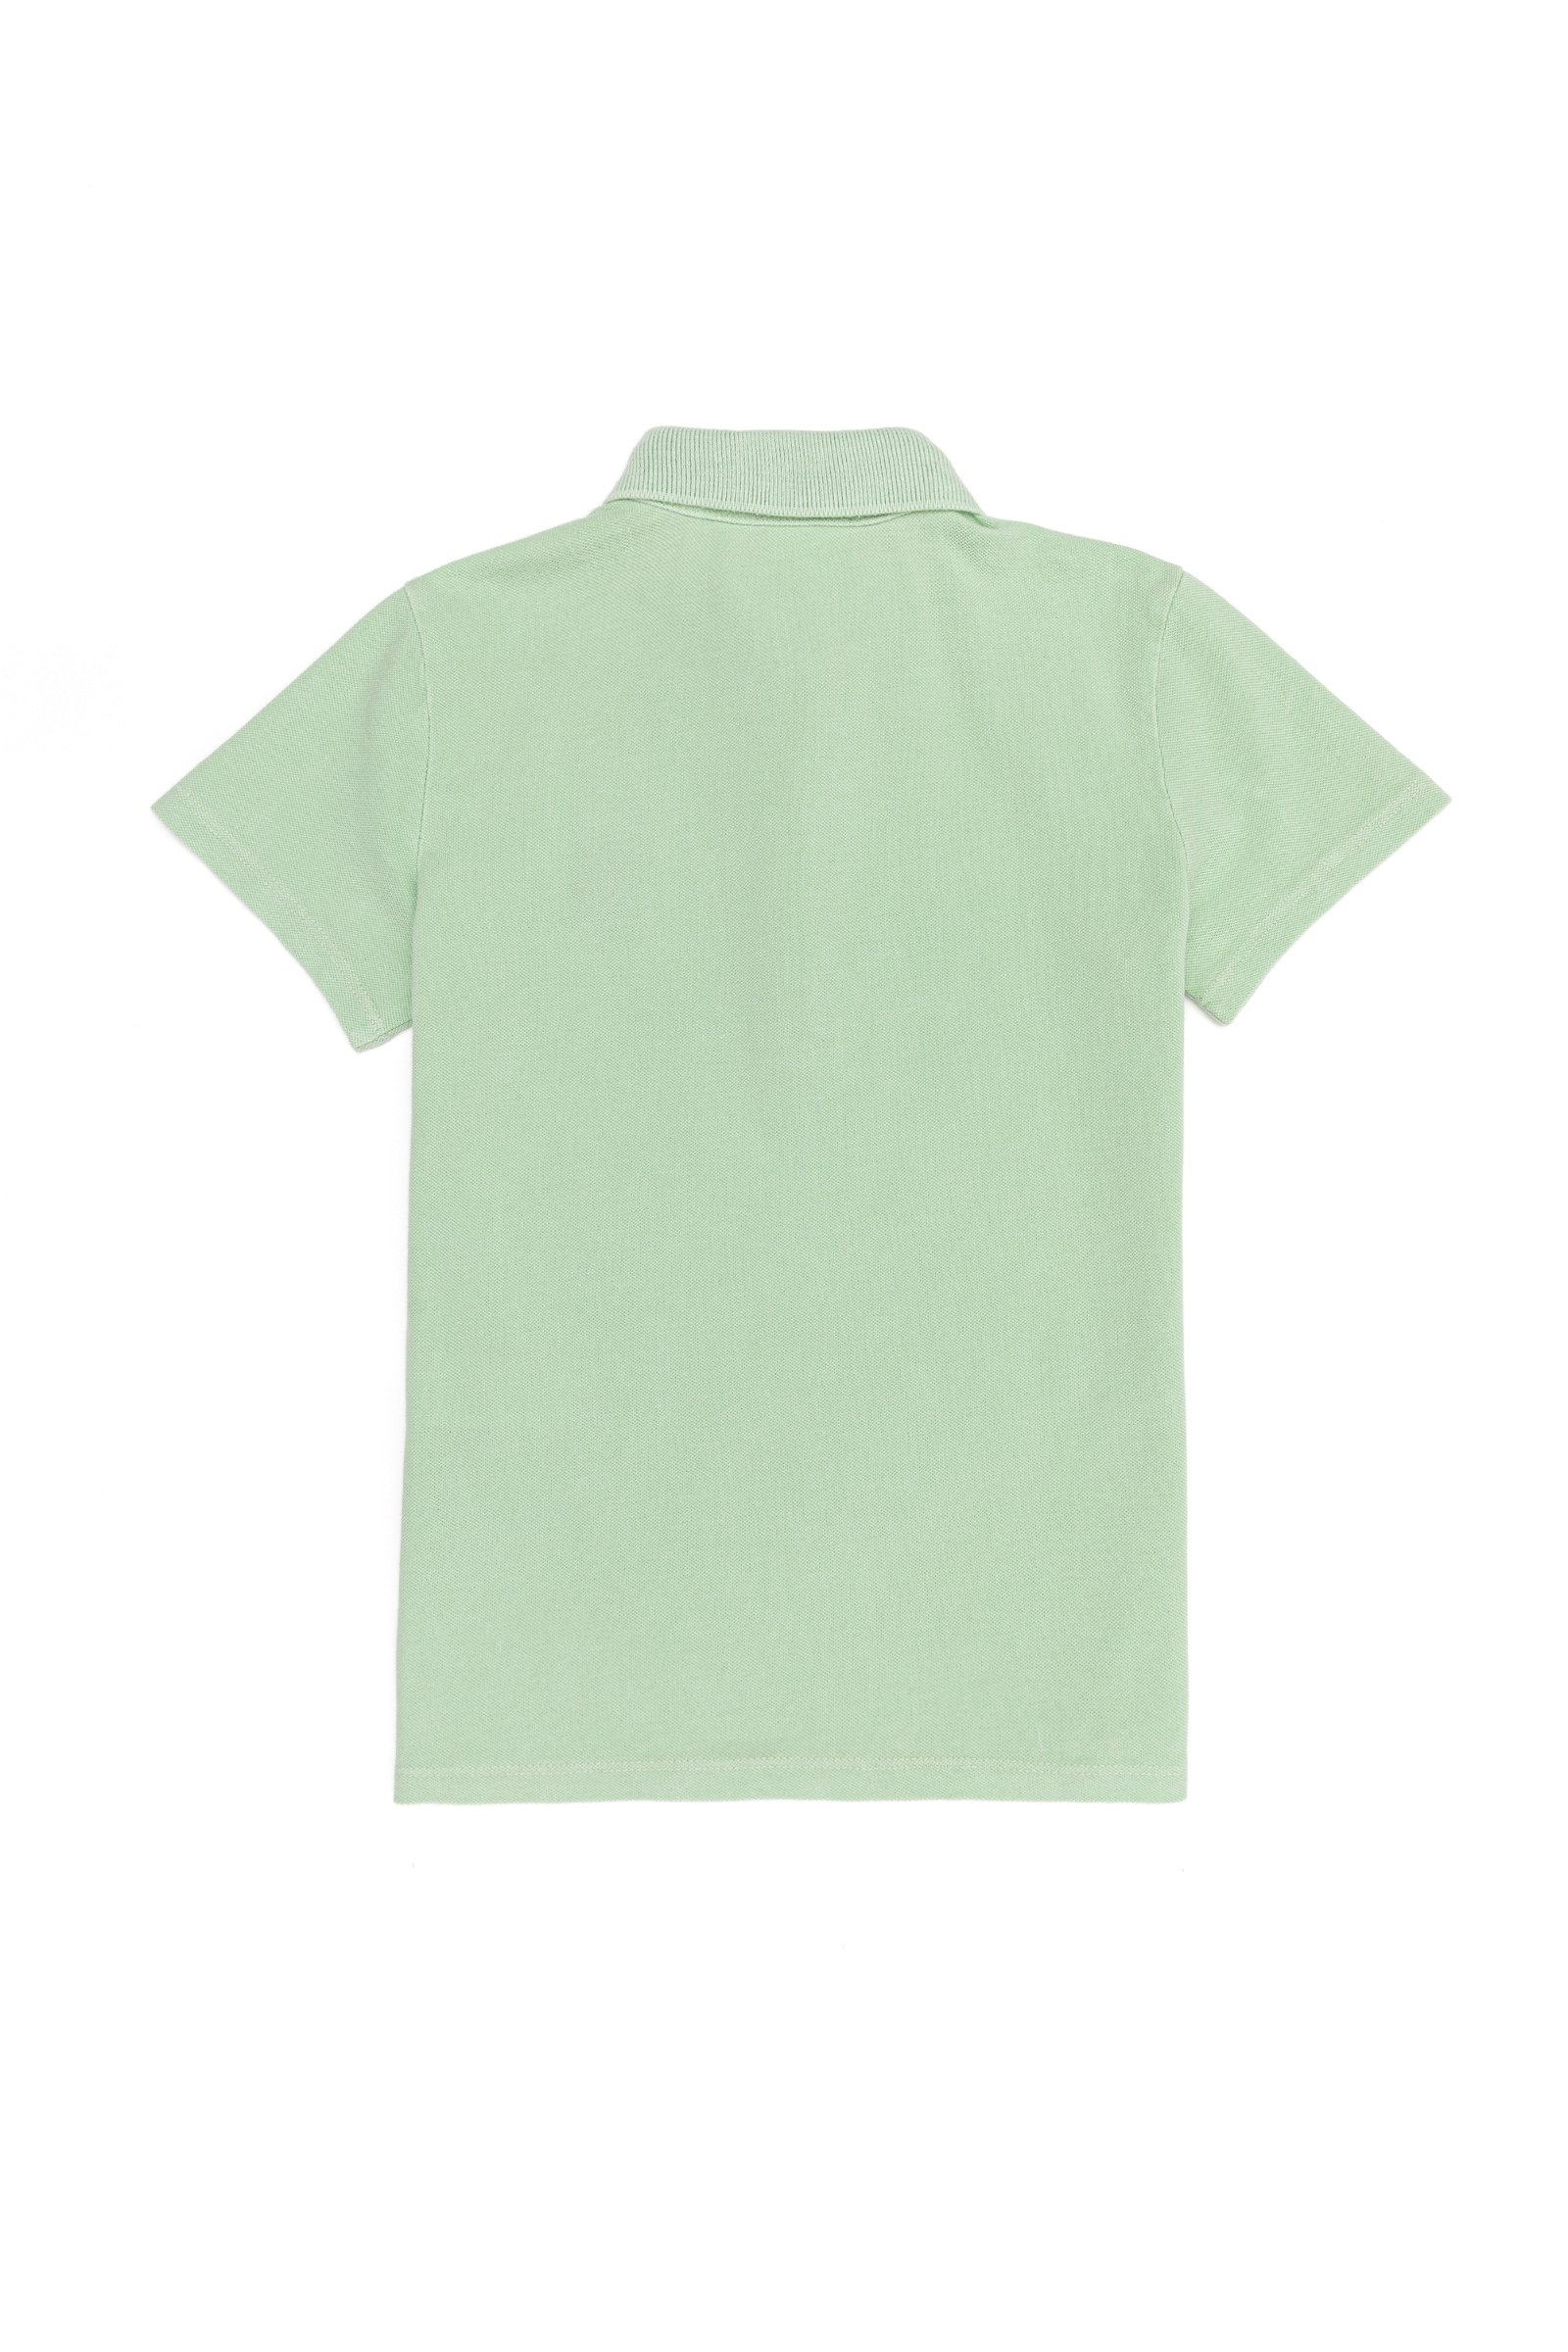 تی شرت یقه پولو نعناعی  استاندارد فیت آستین کوتاه دخترانه یو اس پولو